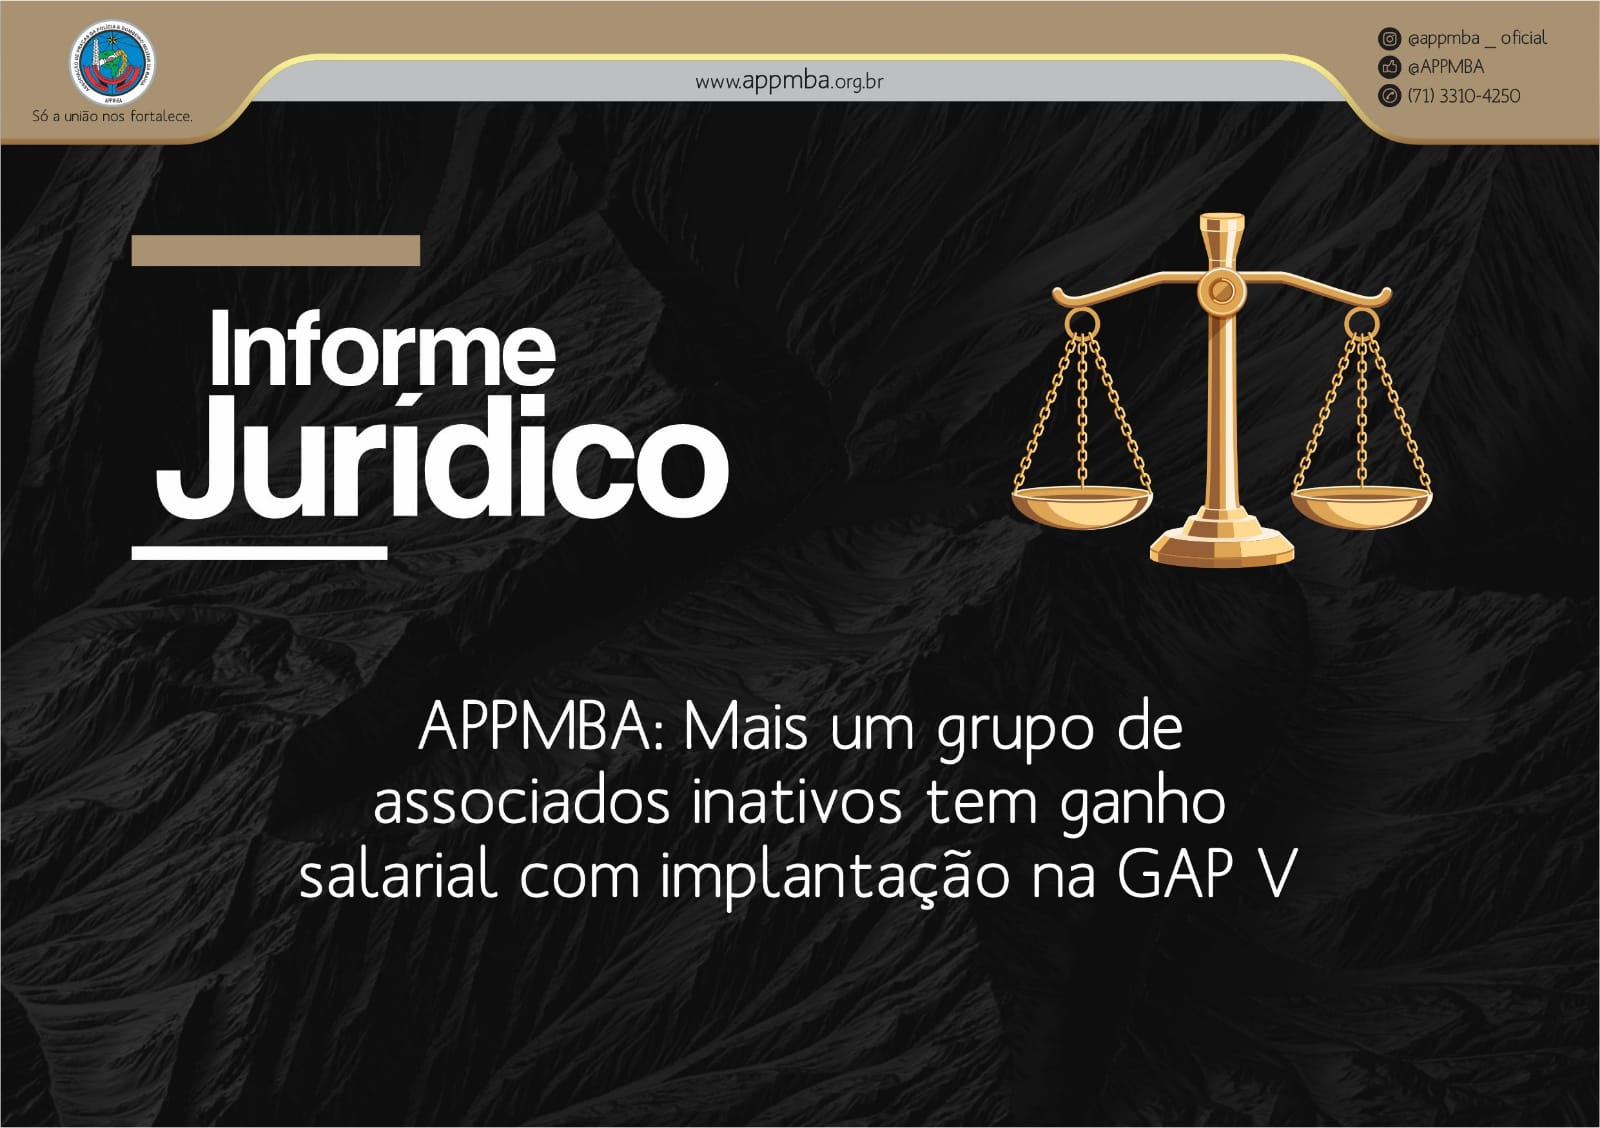 APPMBA: Mais um grupo de associados inativos tem ganho salarial com implantação na GAP V